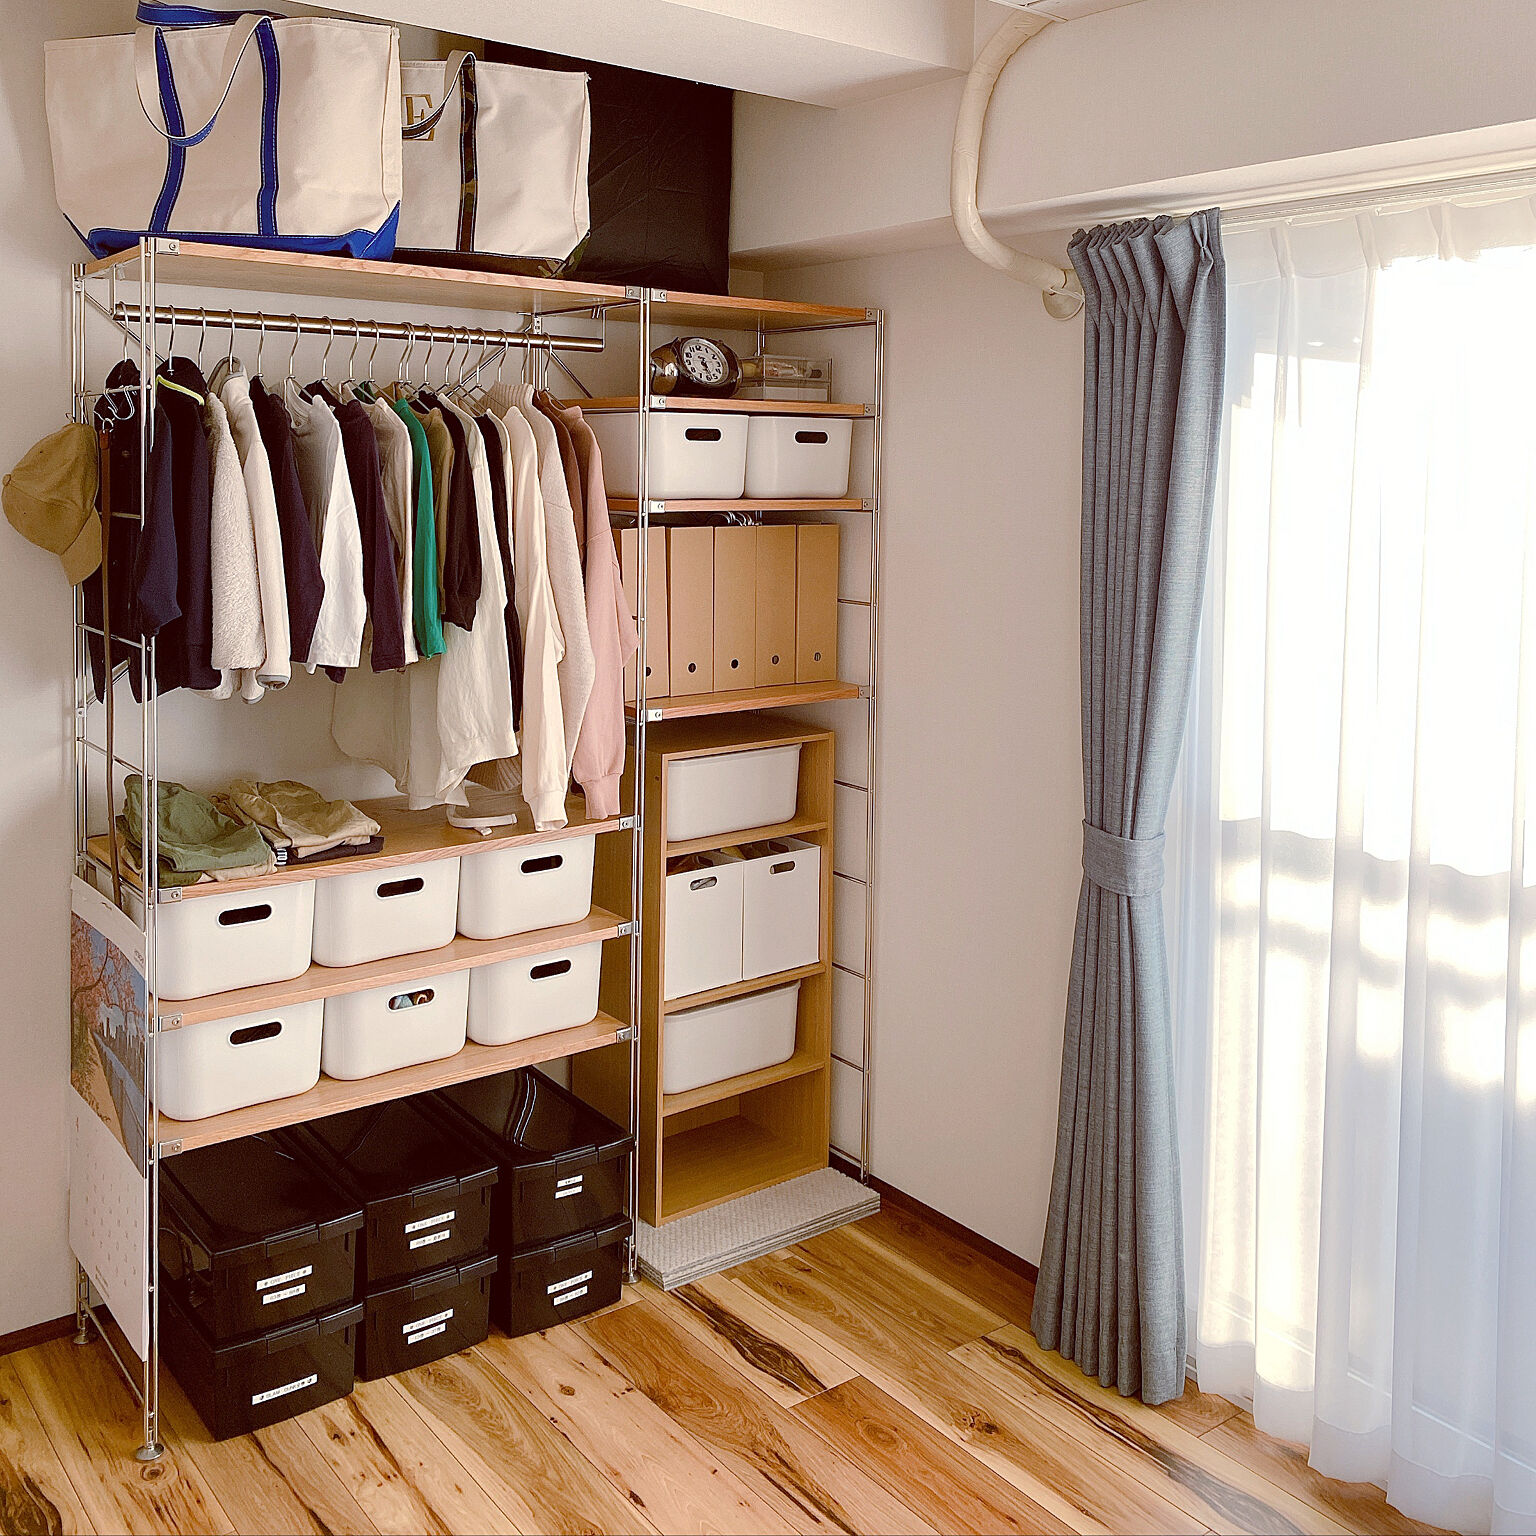 おうち中の衣類をきちんと整理♪無印良品で作る衣類収納 | RoomClip